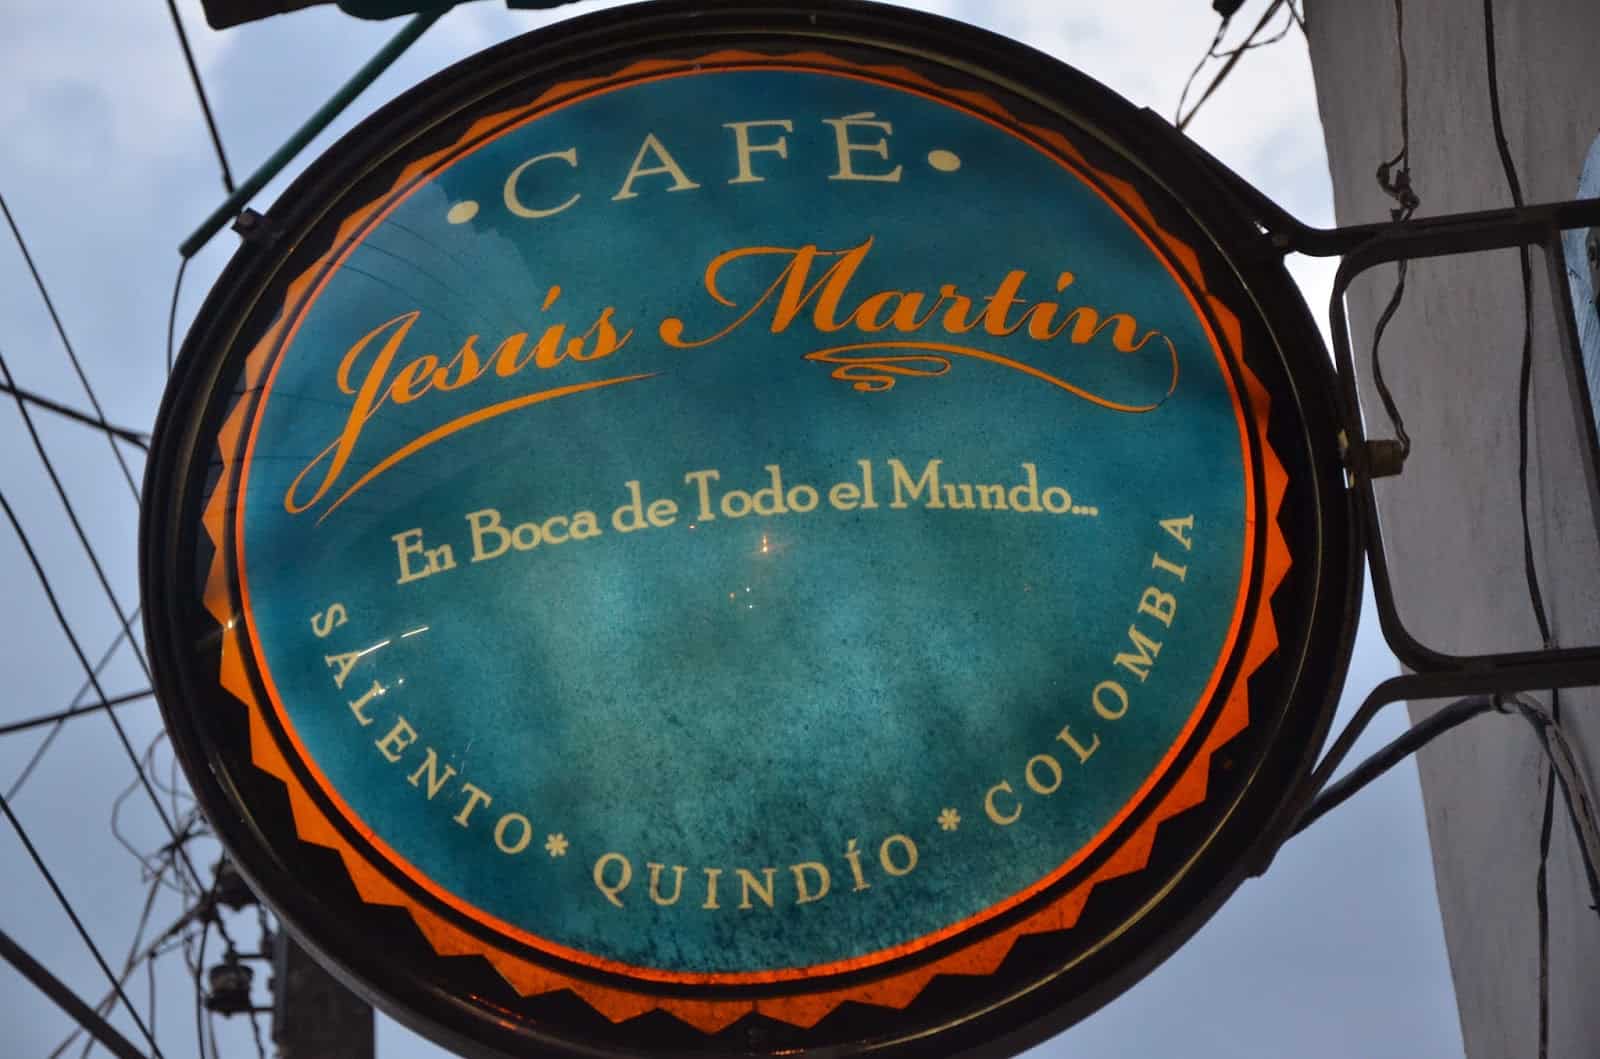 Café Jesús Martín in Salento, Quindío, Colombia